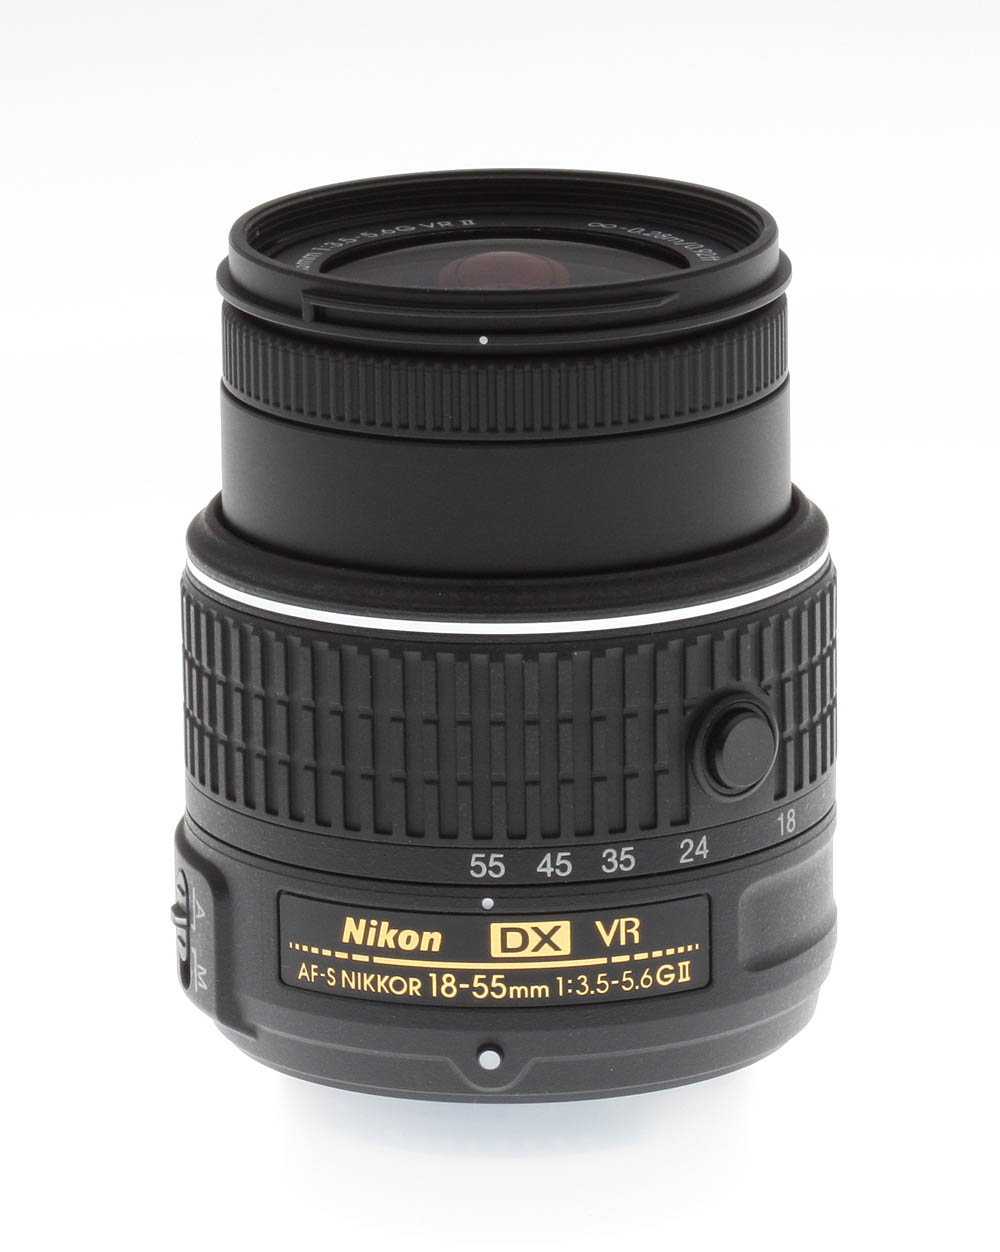 Nikon 18-55mm f/3.5-5.6G VR II DX AF-S Nikkor Review